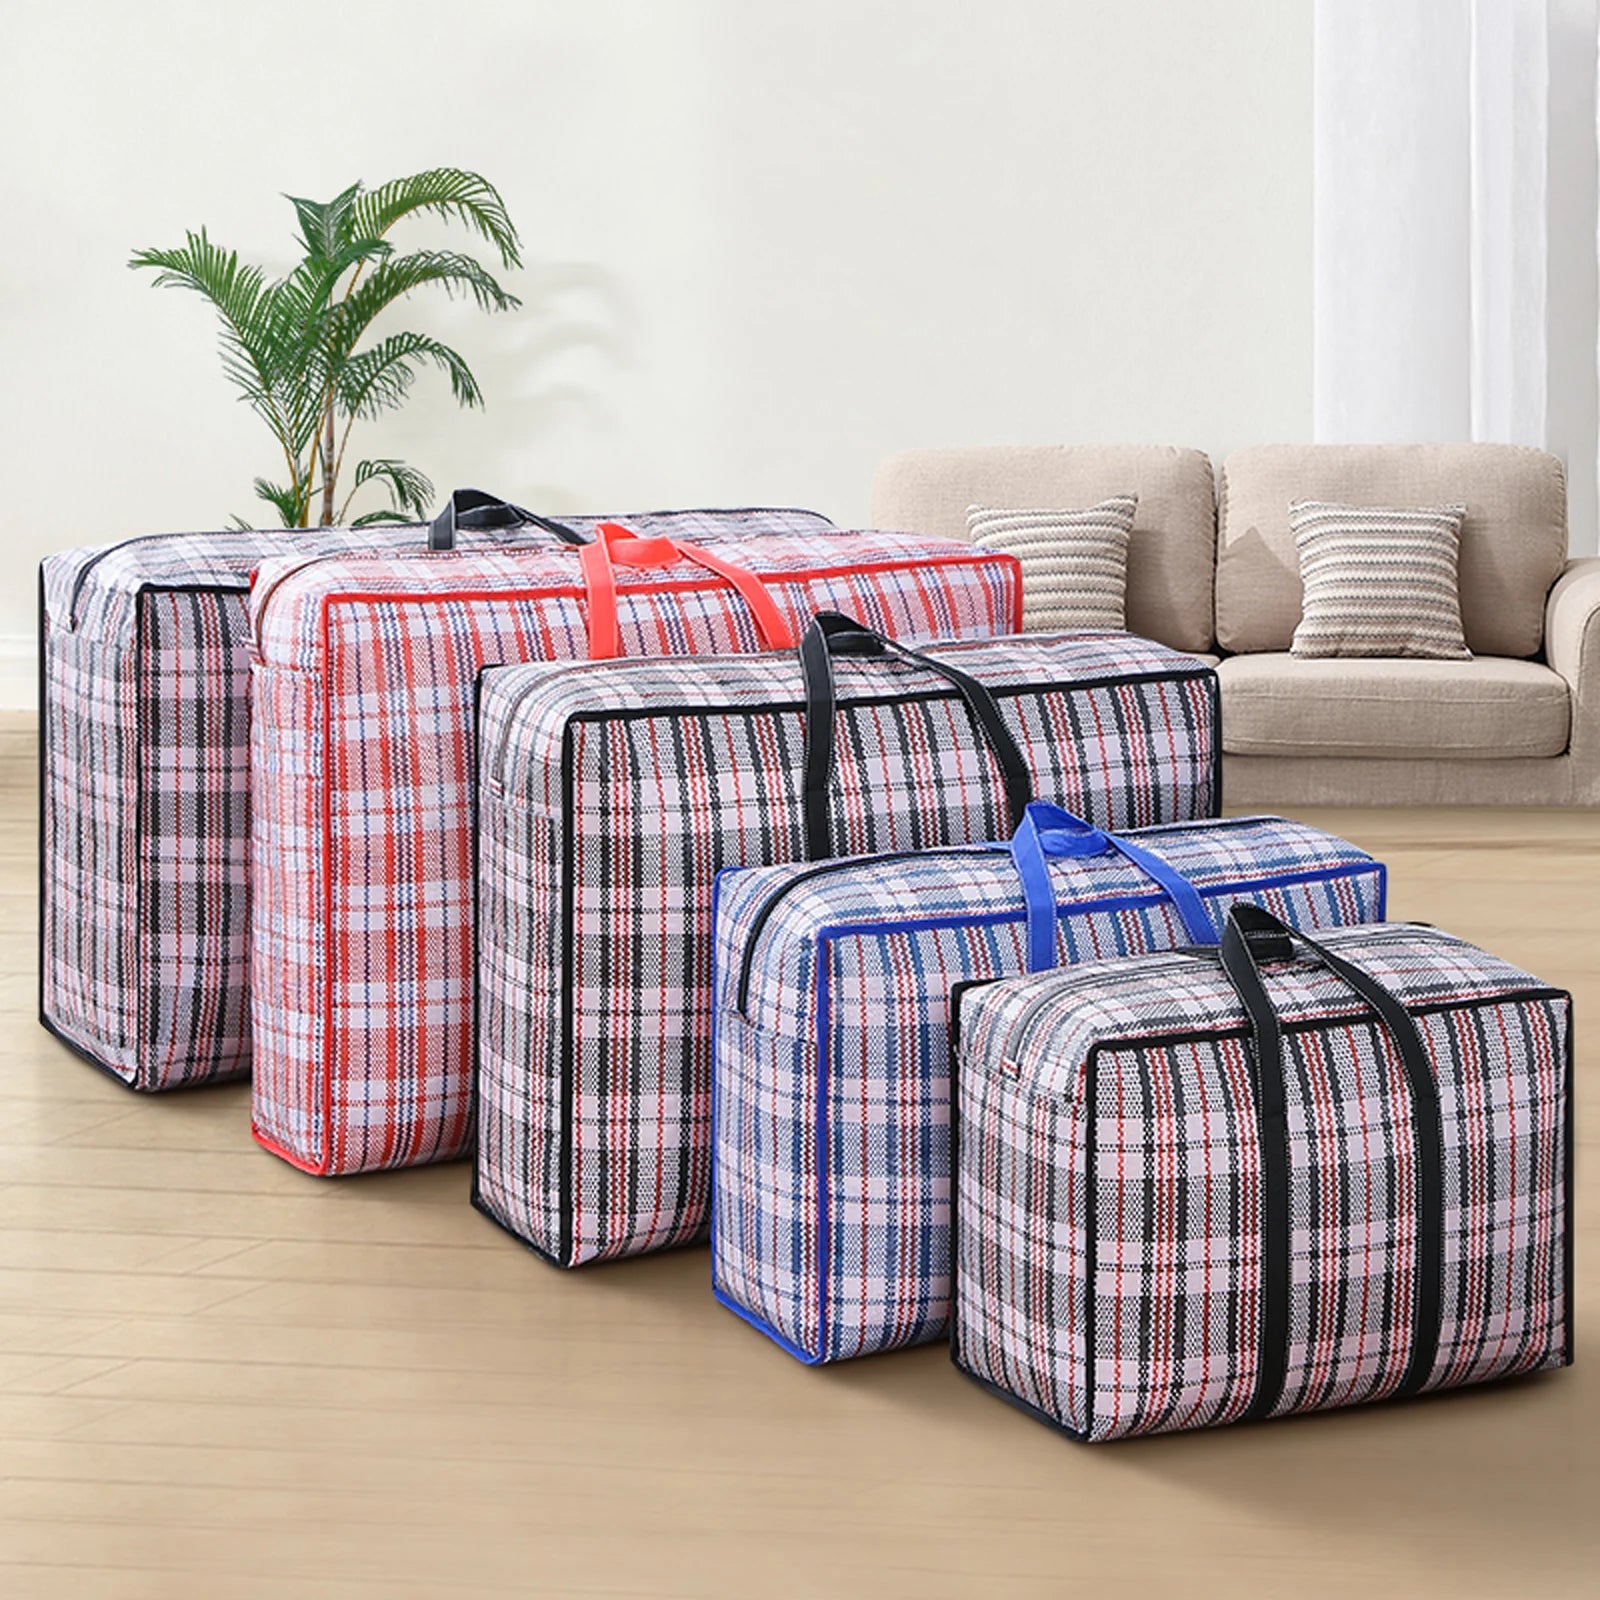 Bolsa de equipaje tejida: resistente a los arañazos y al agua.